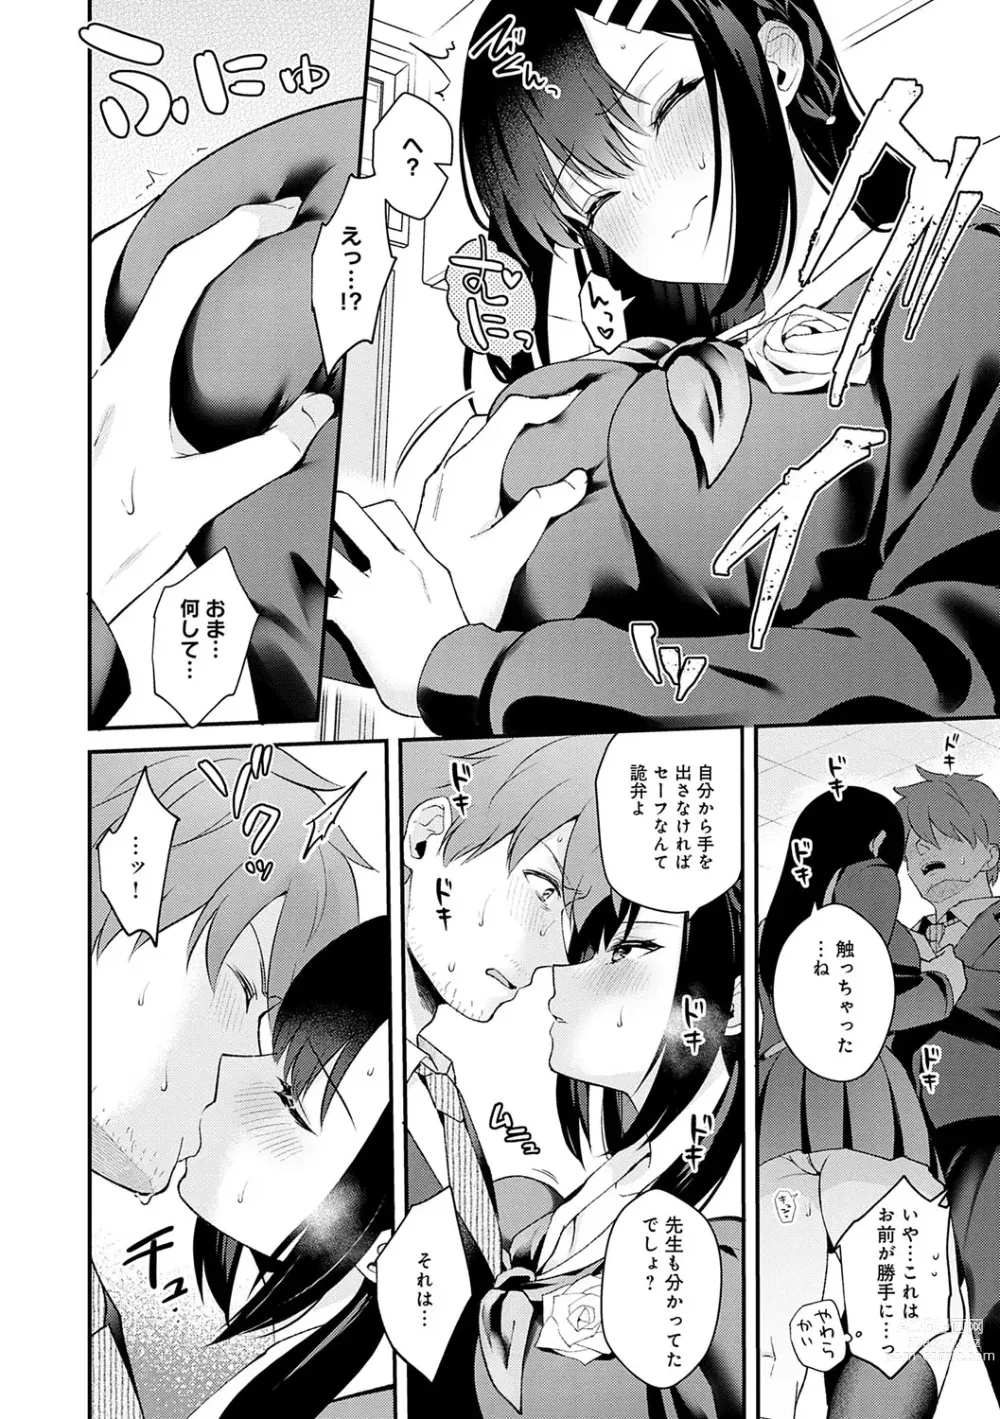 Page 193 of manga Kanojo Face